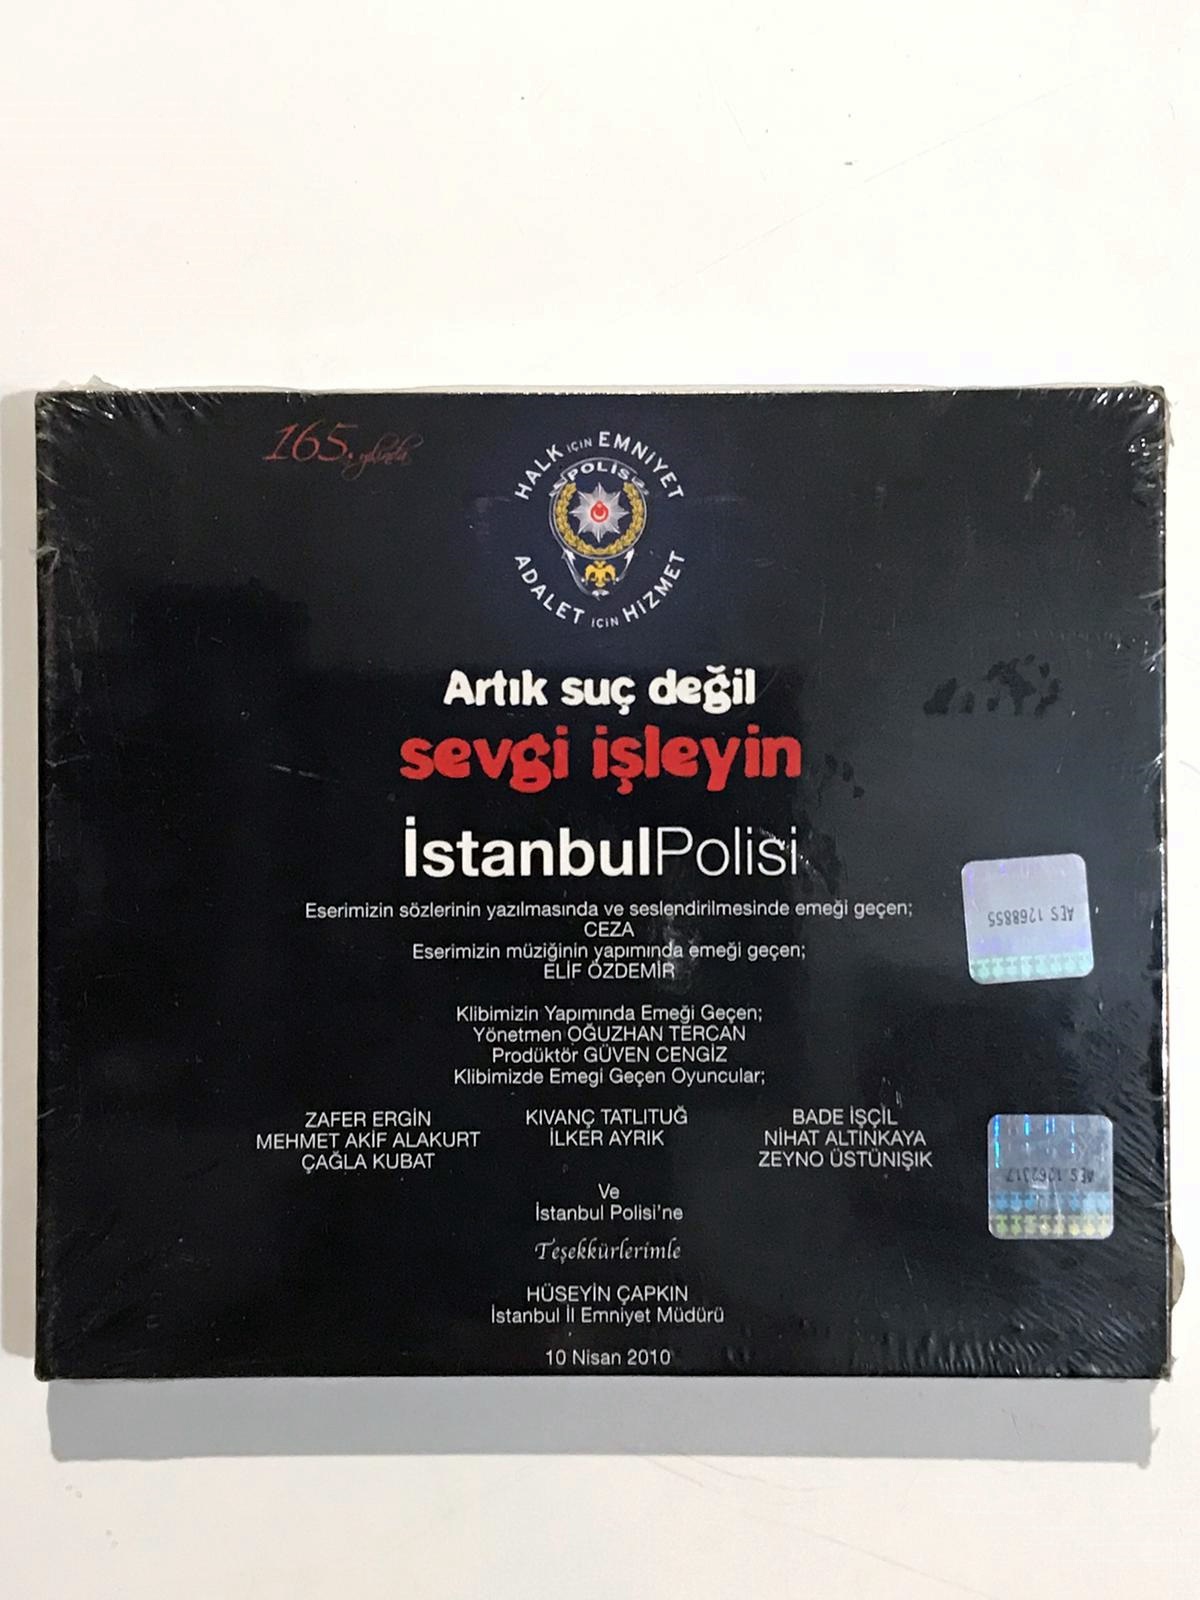 Artık Suç Değil Sevgi İşleyin / İstanbul Polisi 165. Yılında - Cd